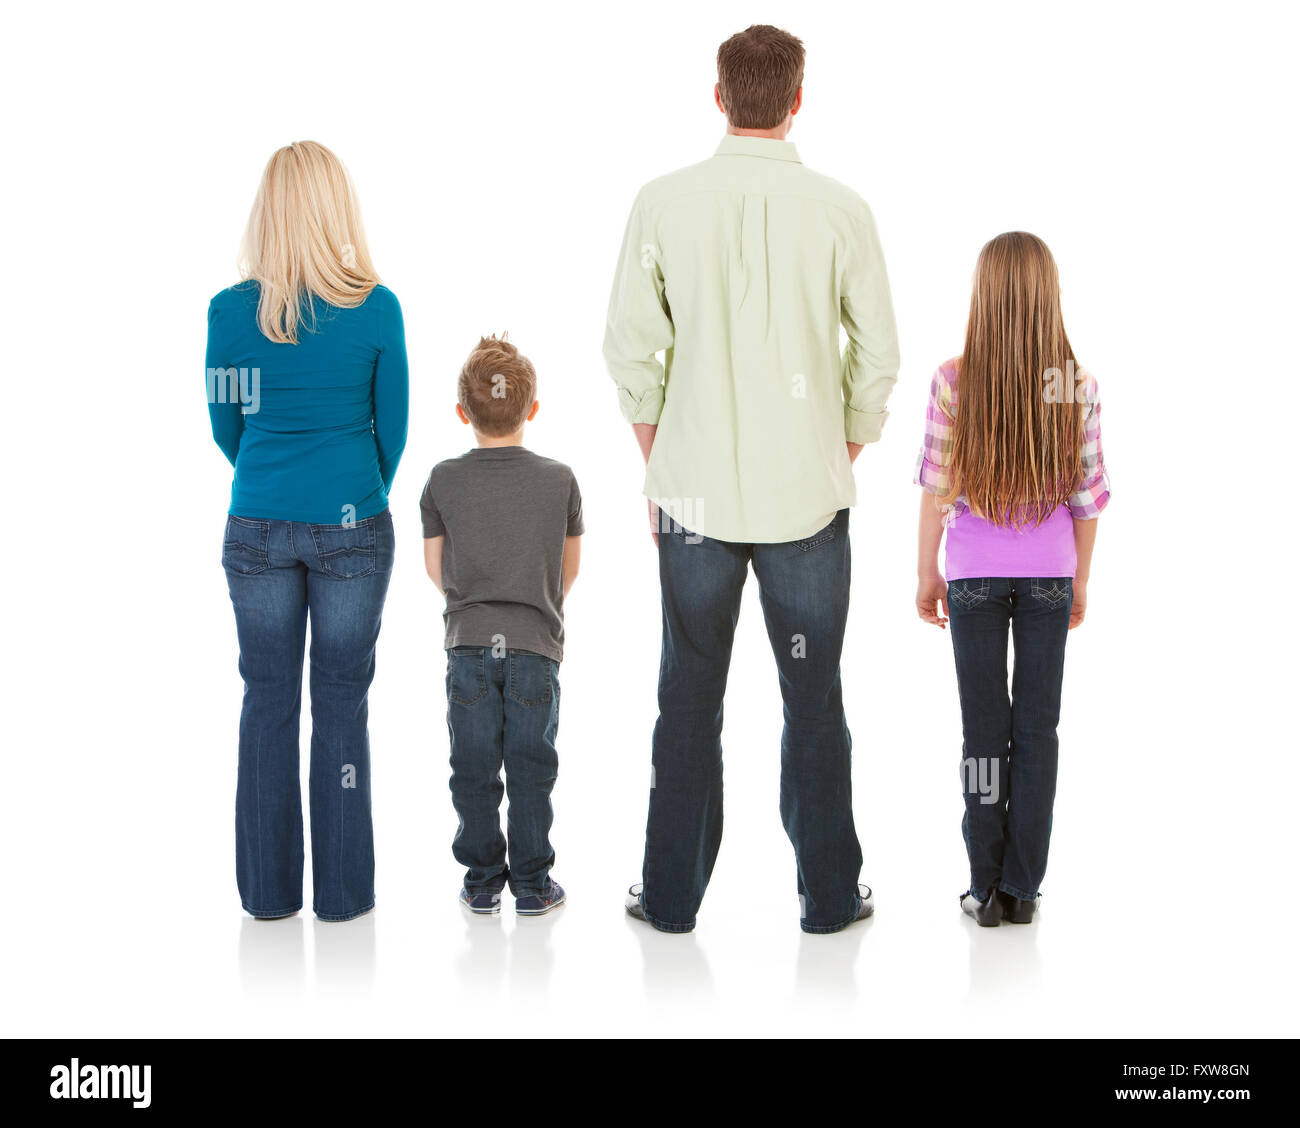 Auf weiße Serie von einem kaukasischen Kernfamilie in Freizeitkleidung und Fitnesskleidung isoliert.  Mama, Papa, Bruder und Schwester. Stockfoto